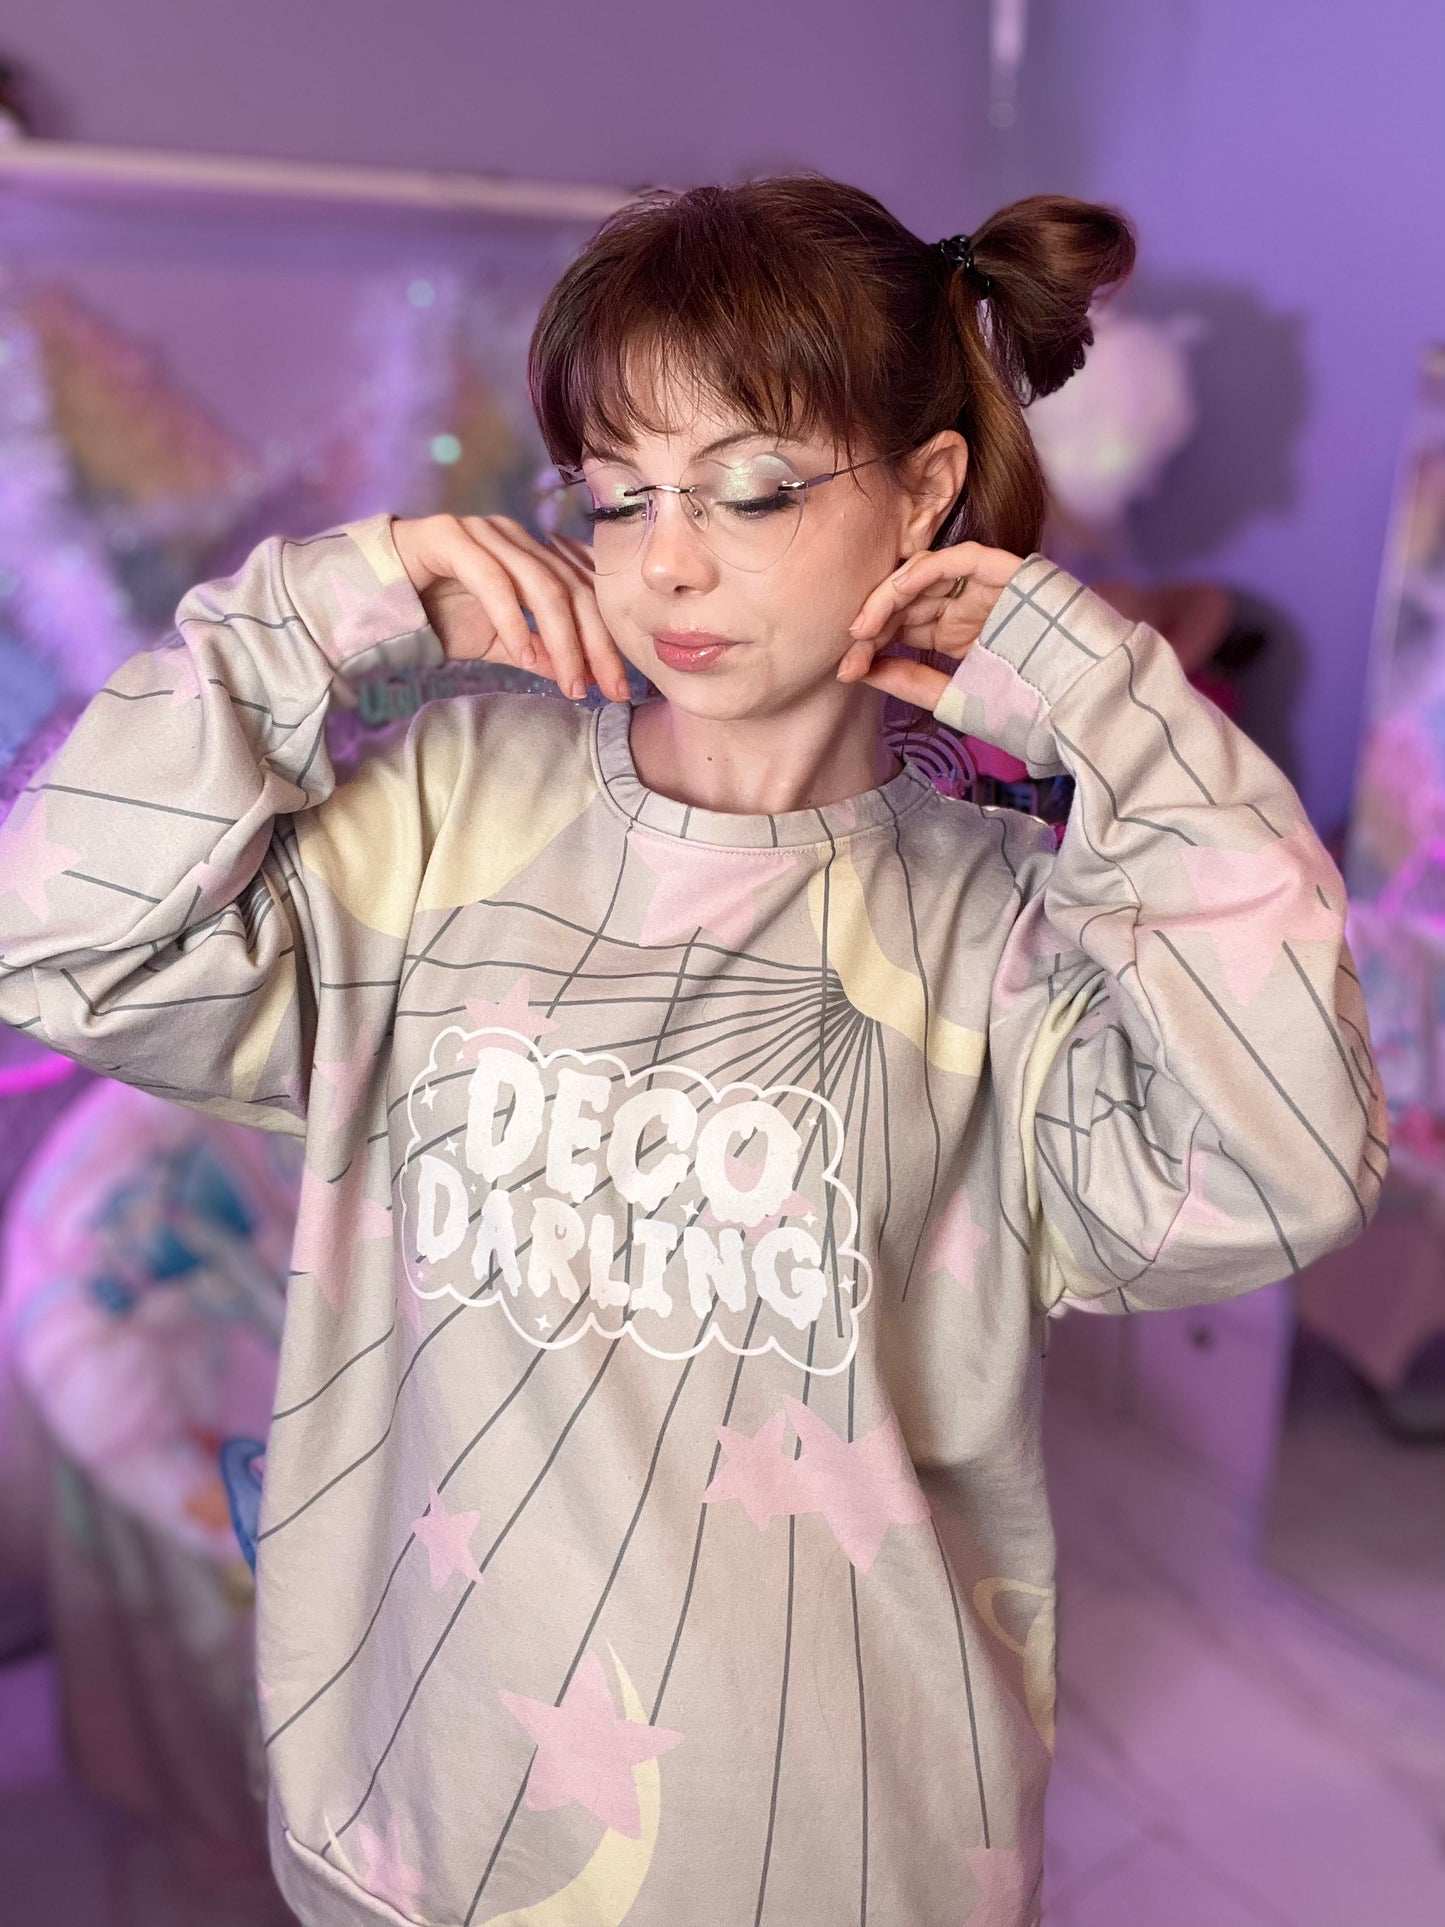 Deco Darling Grey Sweatshirt